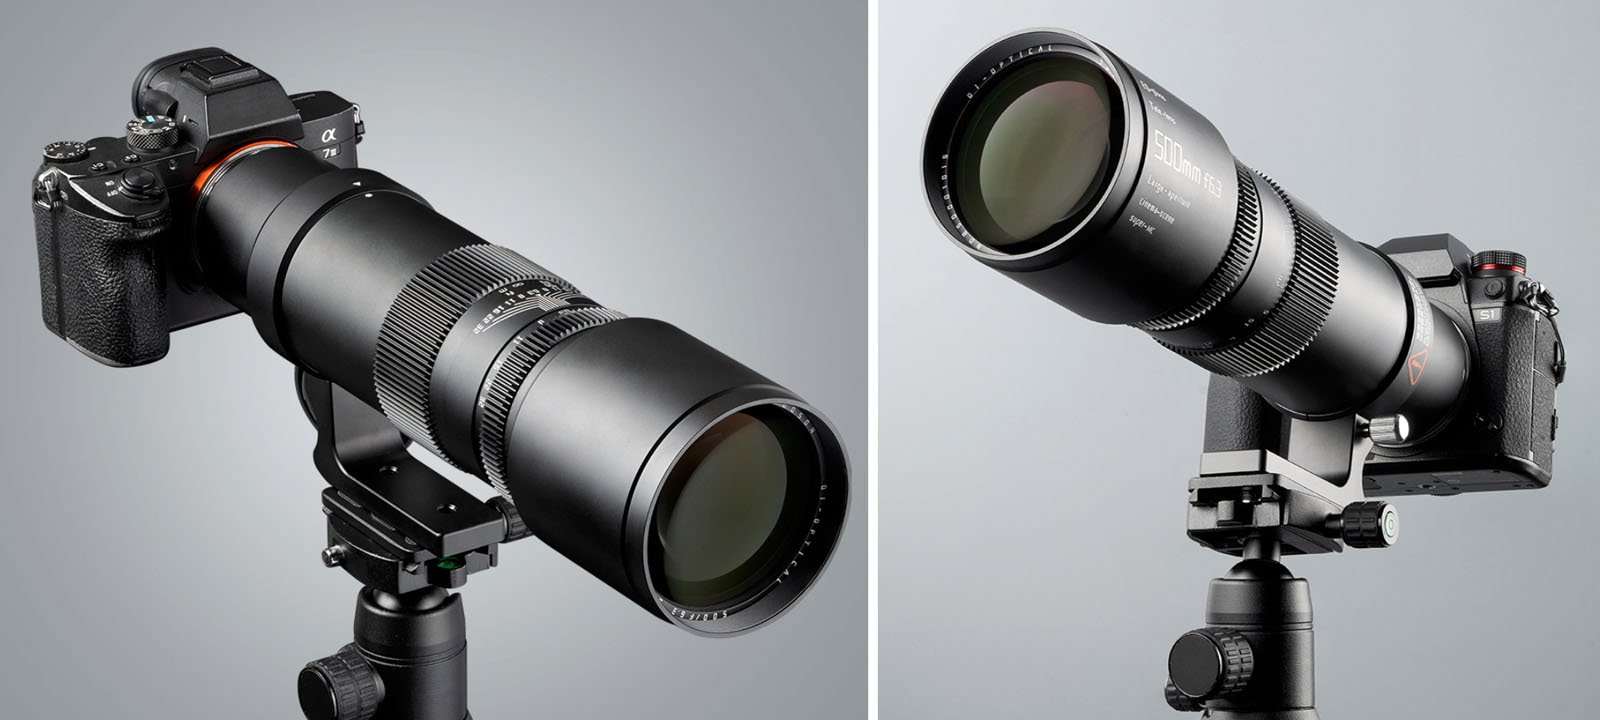 TTArtisan 500mm f/6.3 lens for full-frame mirrorless cameras